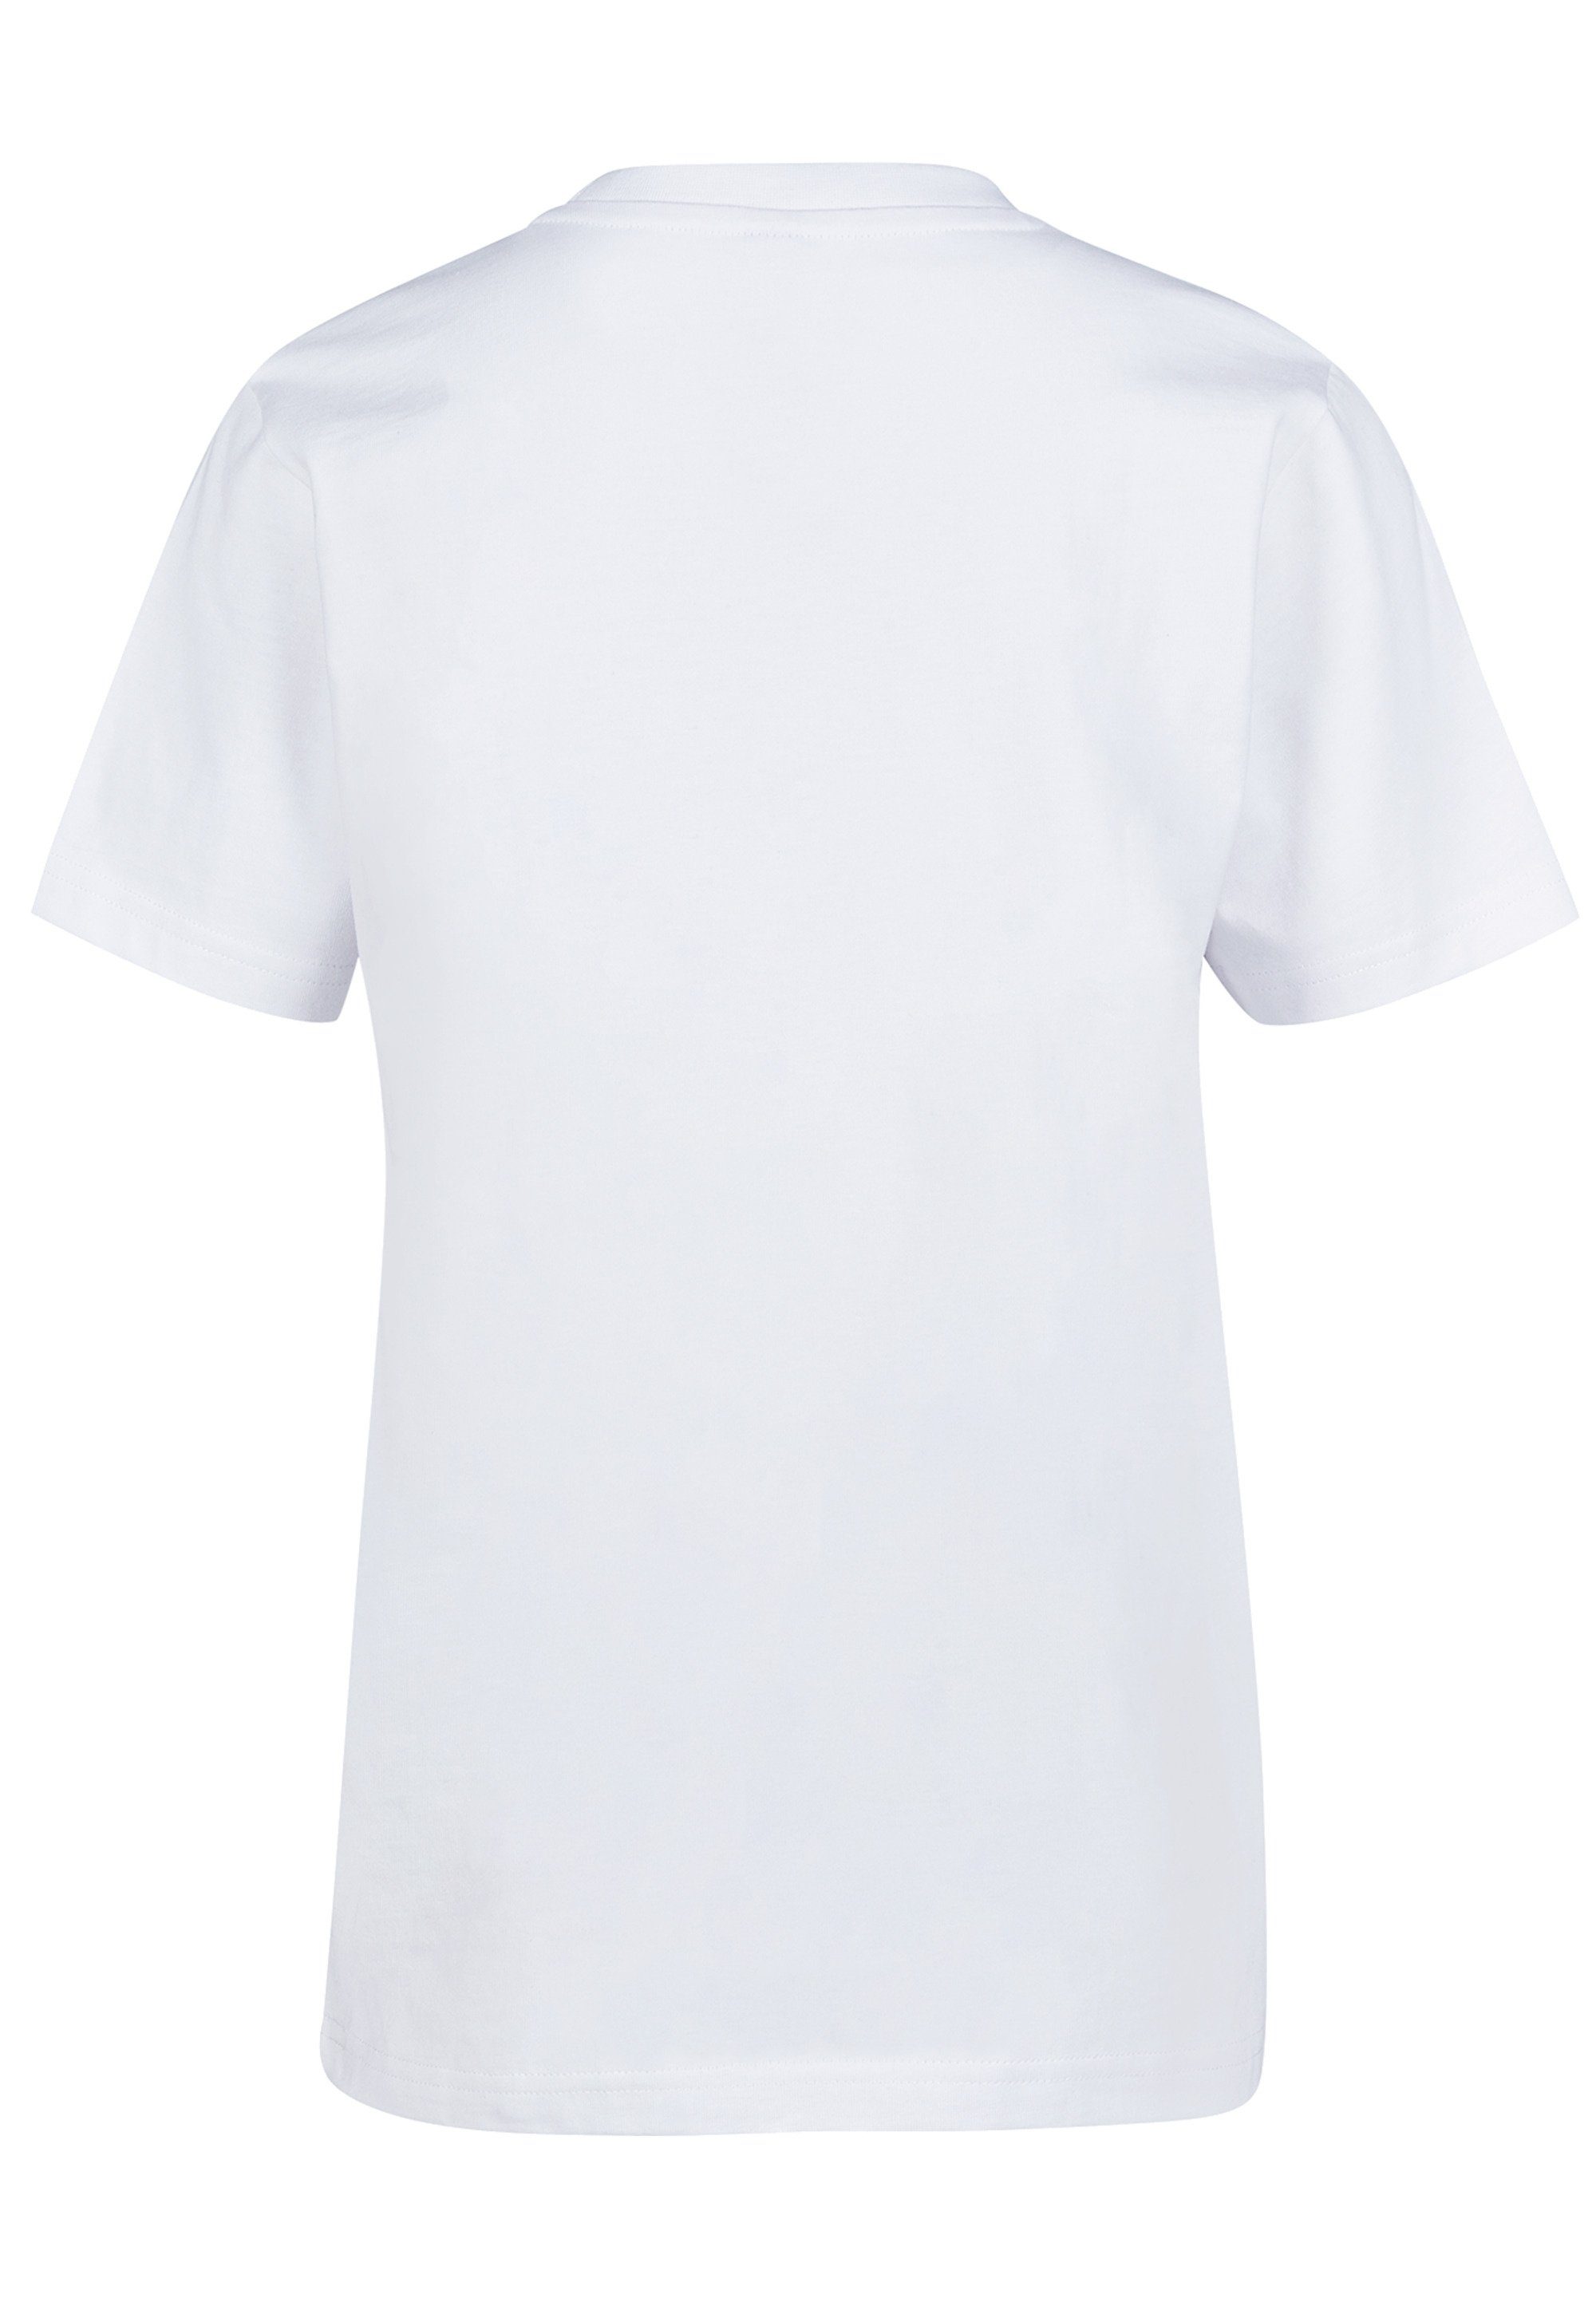 F4NT4STIC T-Shirt Fußballer Print weiß bunt